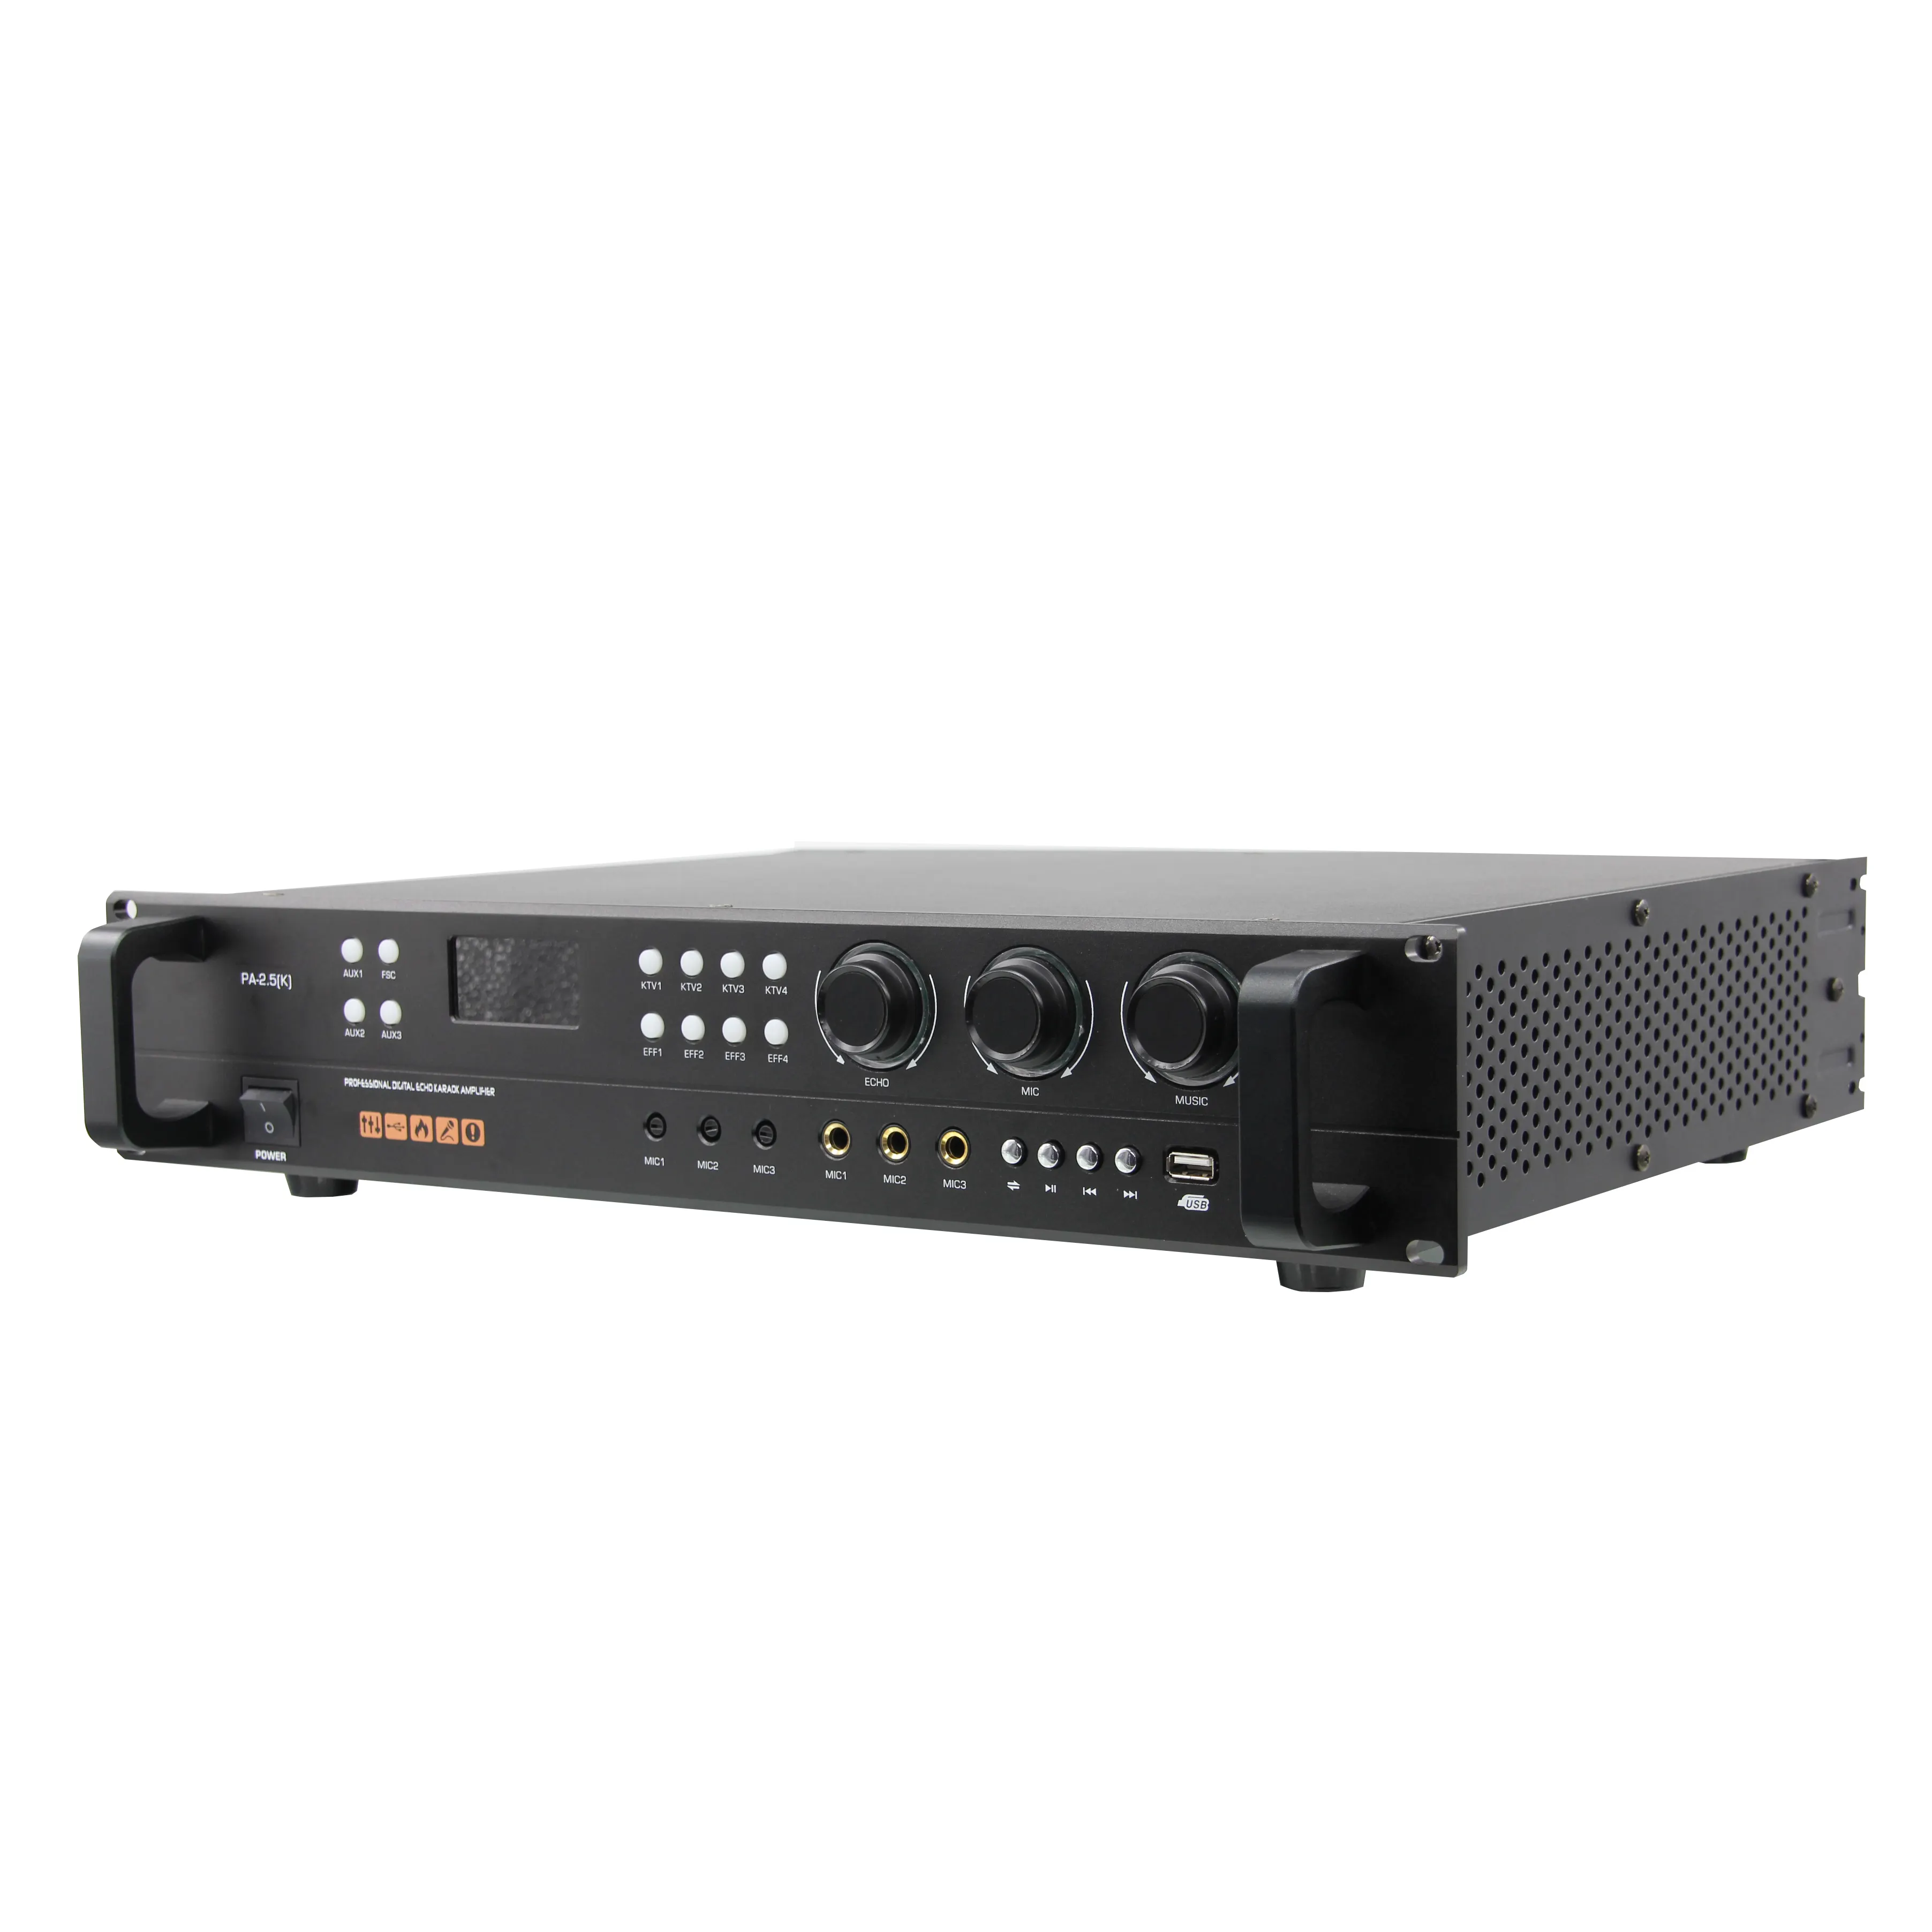 Best Price Power Amplifier Professional Stereo Digital ECHO Dual Channels Mixer Karaoke Amplifier